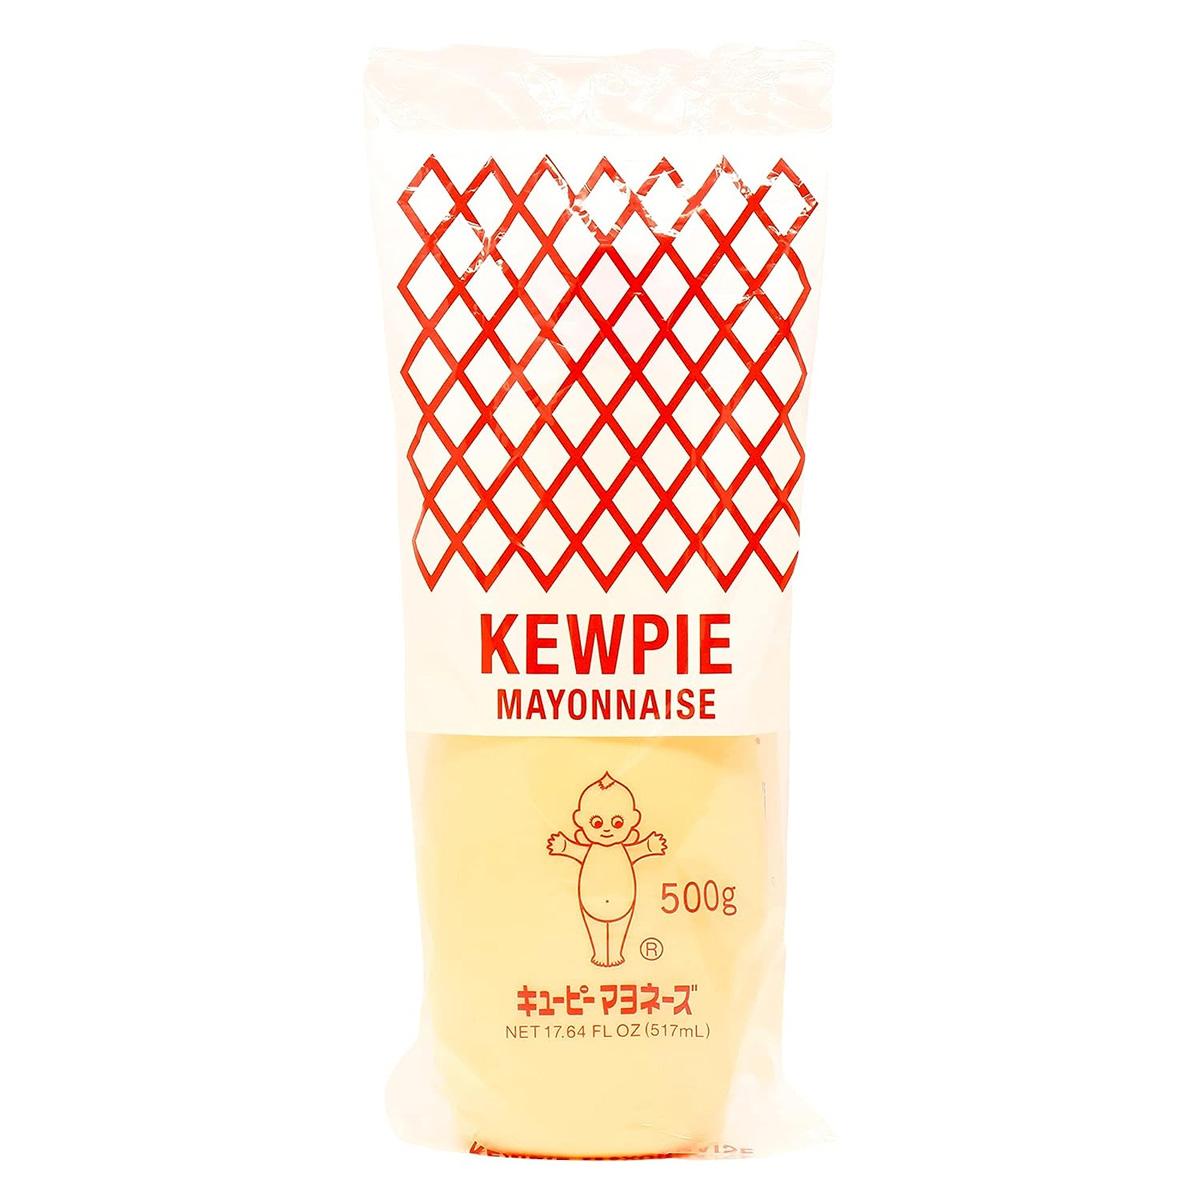 Kewpie Mayonnaise 2 Pack for $7.54